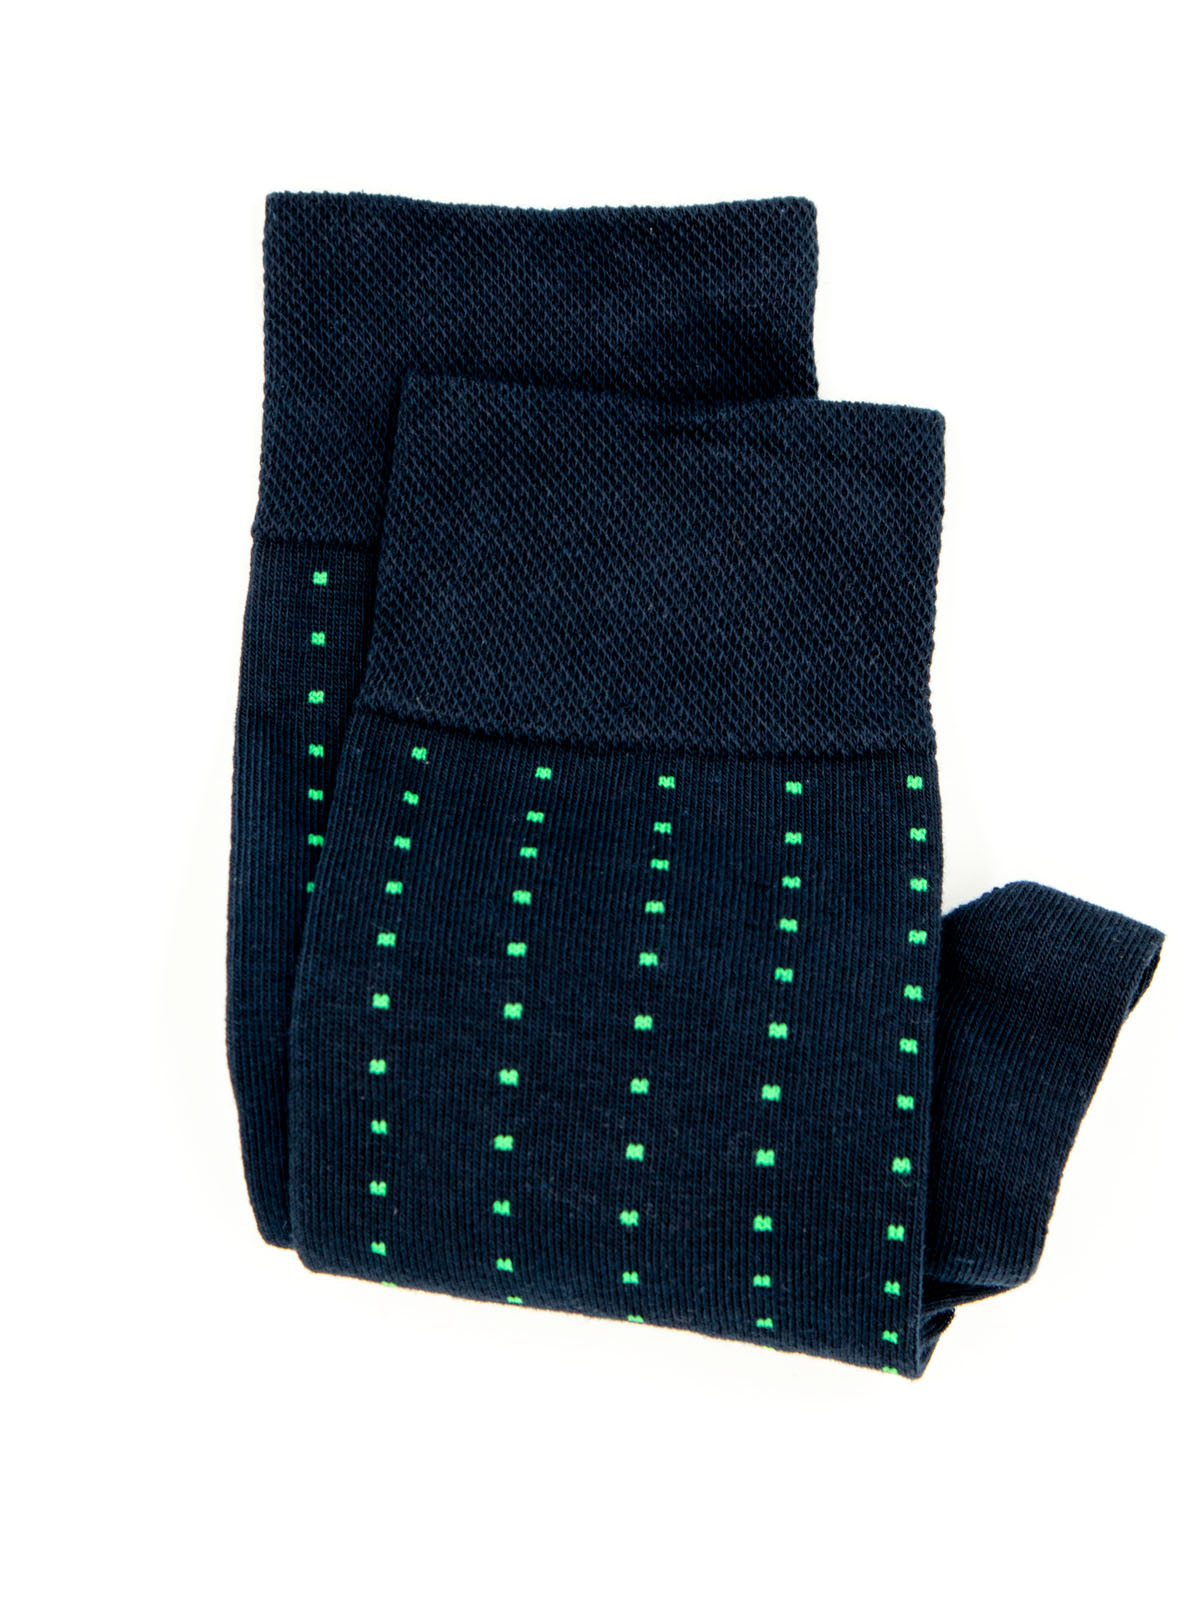 Тъмно сини чорапи със зелени квадрати - 10525 - 7.00 лв img3